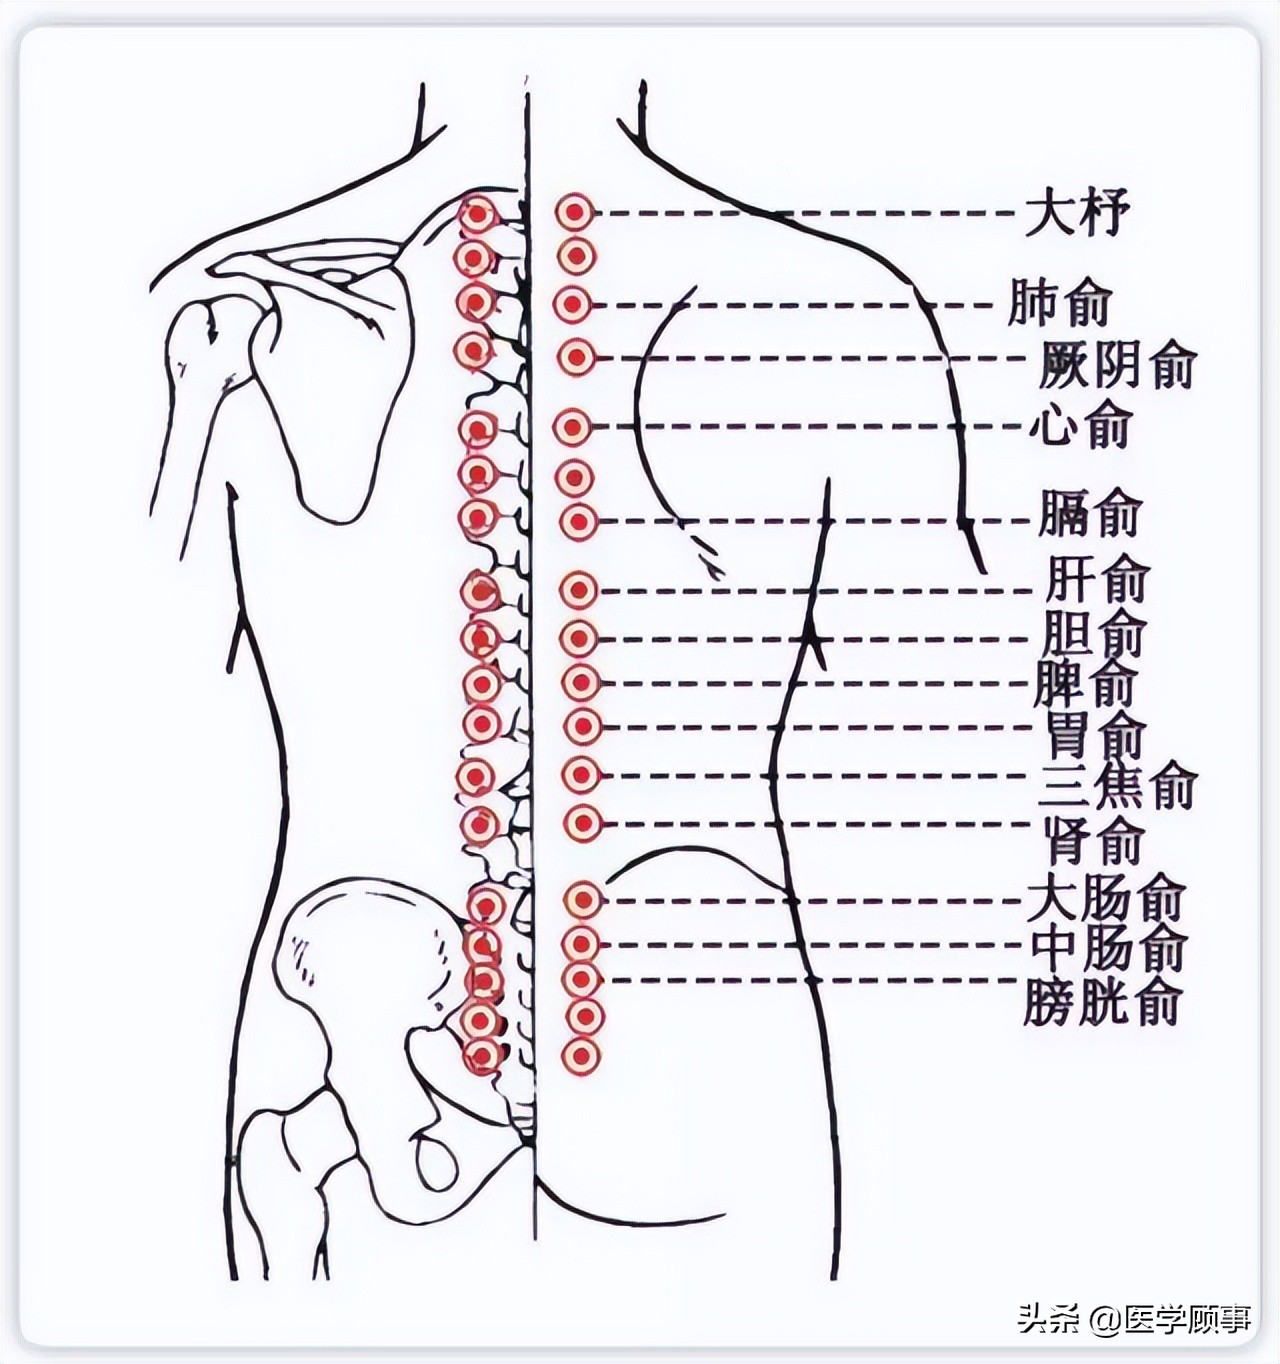 广安市人民医院泌尿外科完成全市首例膀胱镜无痛检查-医院汇-丁香园